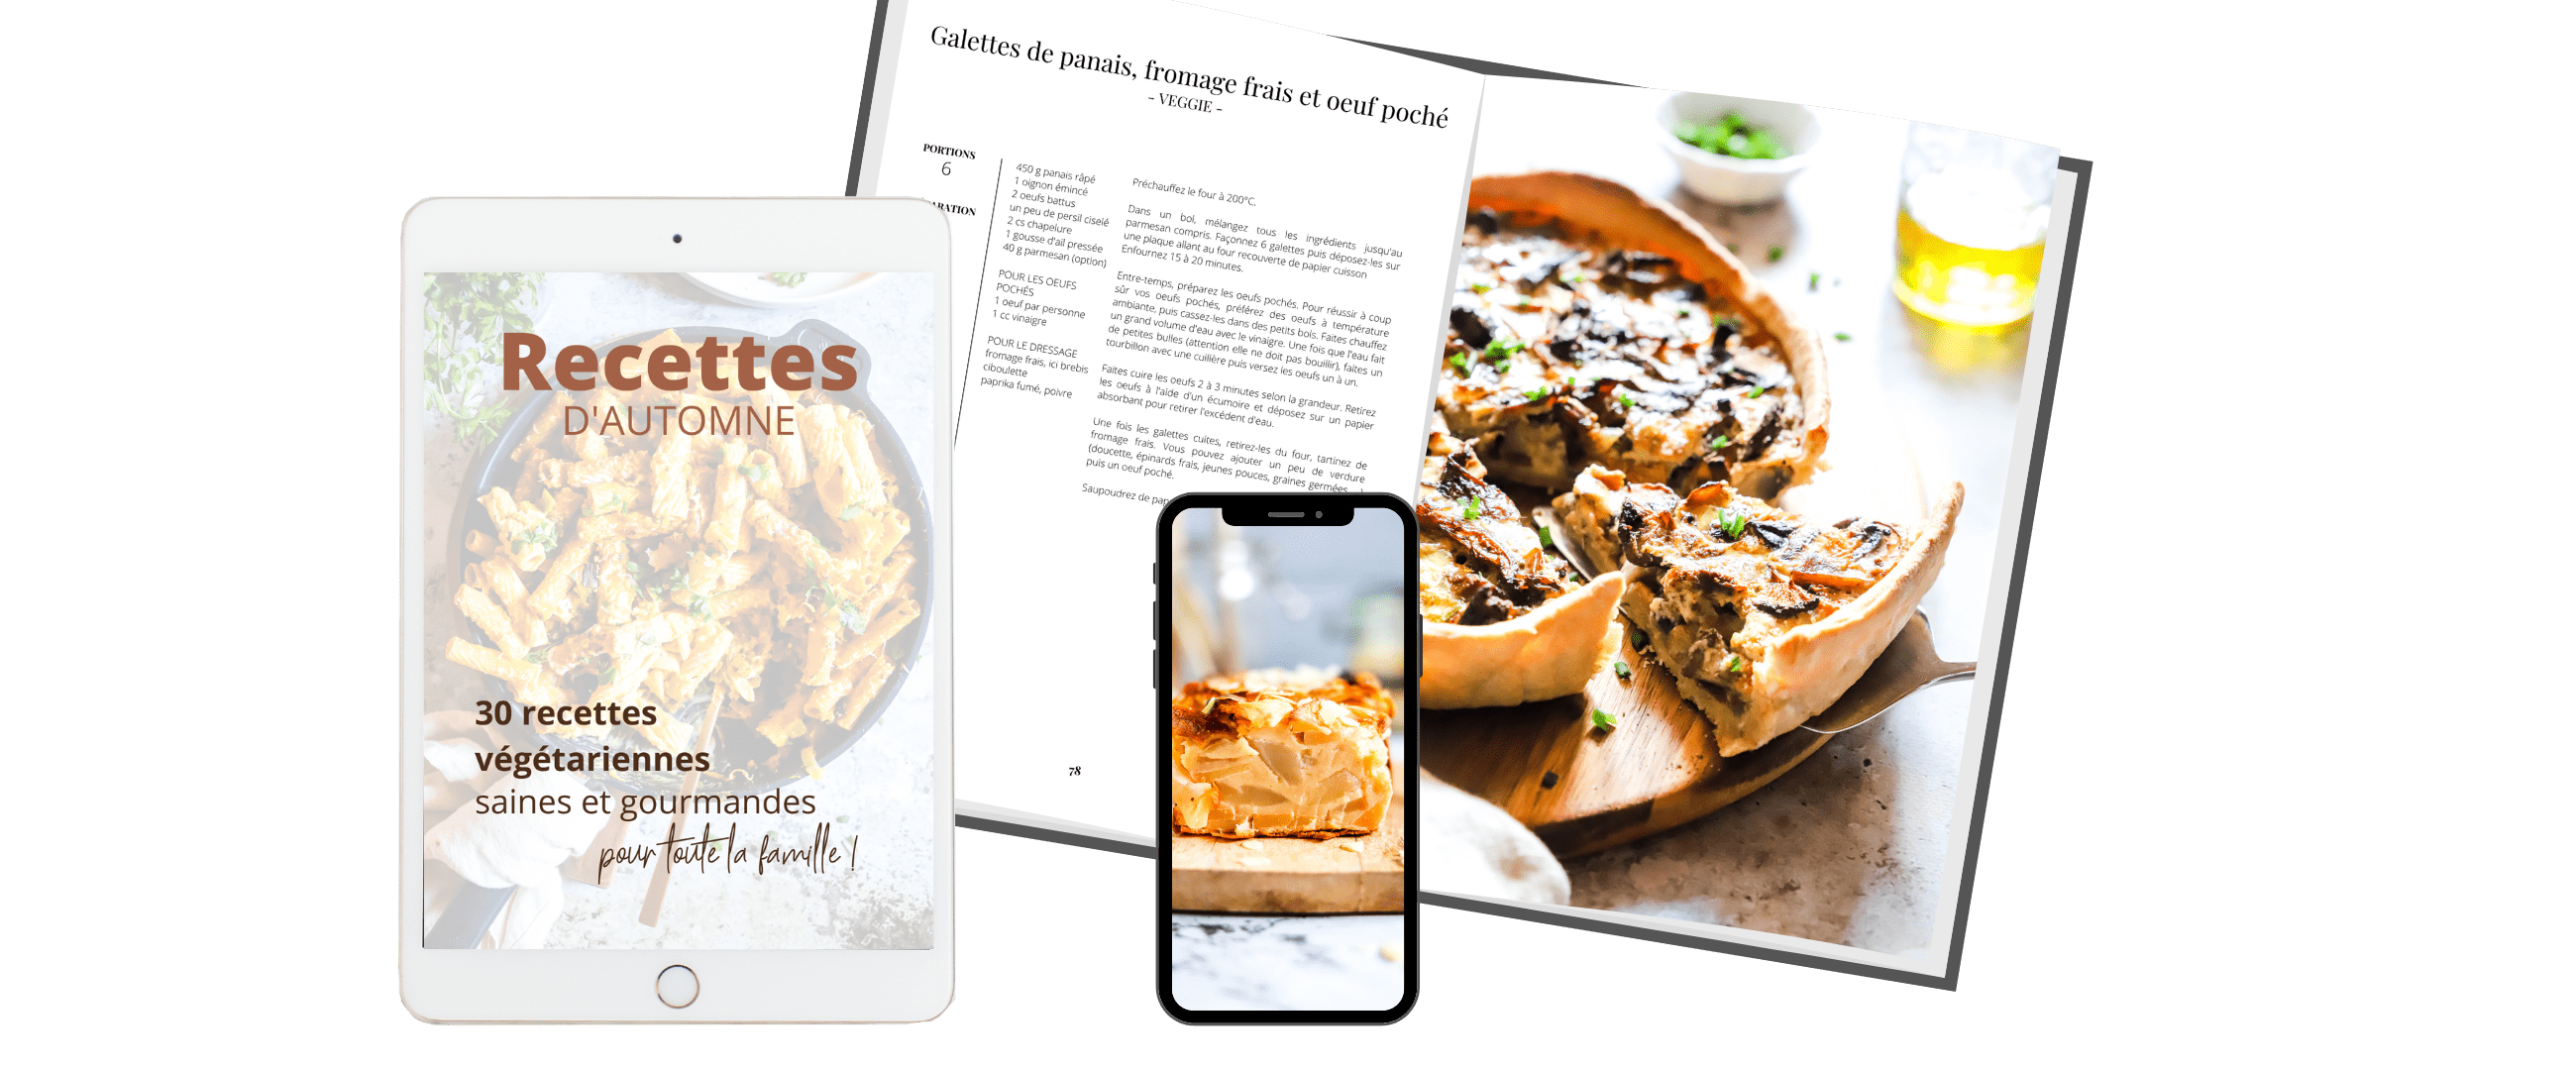 ebook de recettes végétariennes et facile pour toute la famille